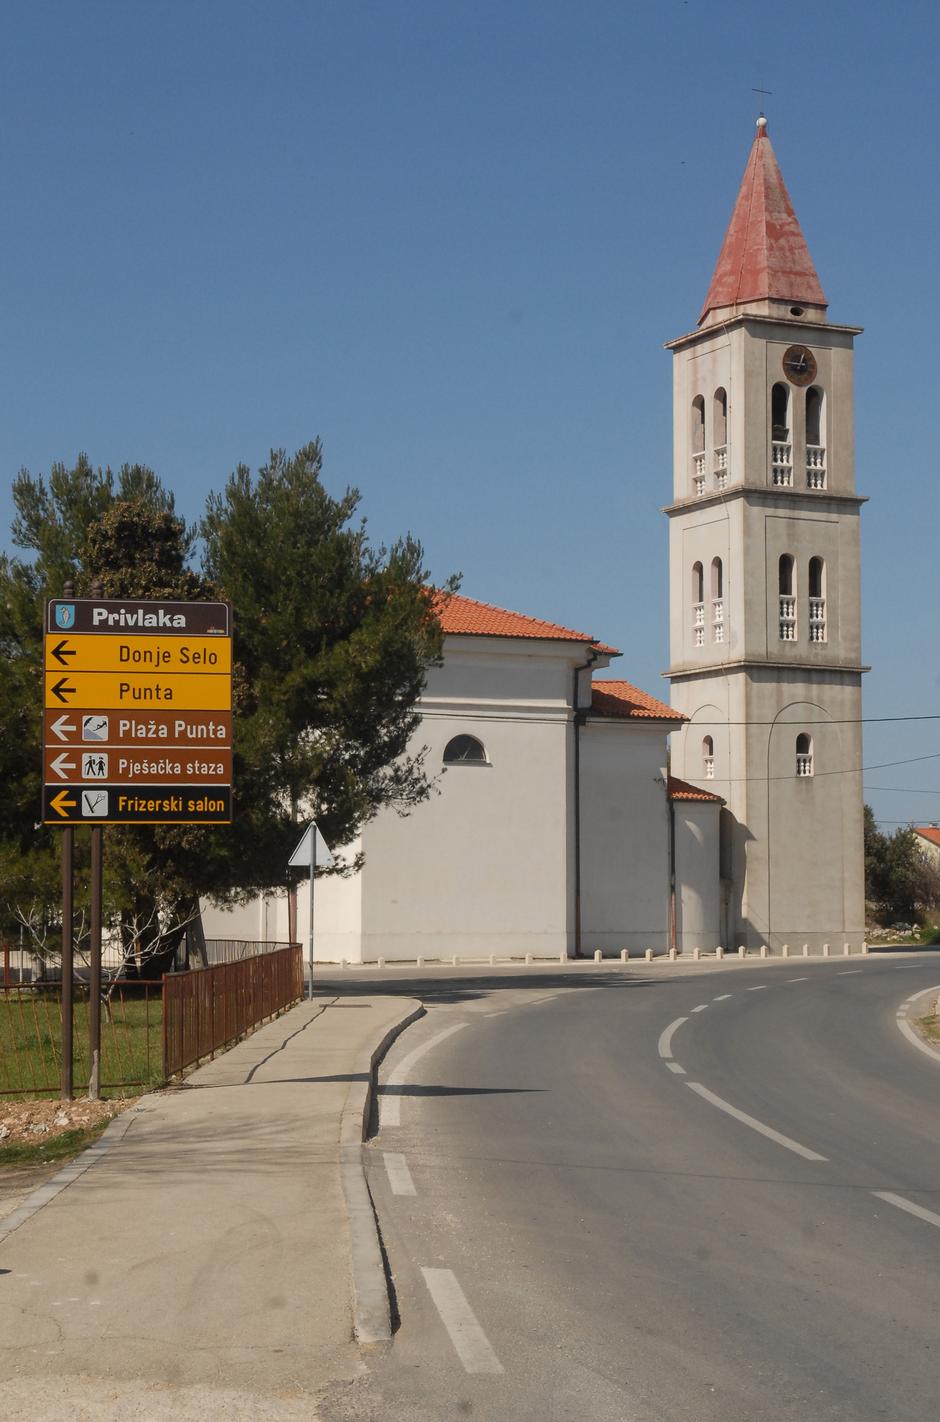 Privlaka: Crkva u kojoj je jedno vrijeme službovao svećenik Nedjeljko Ivanov | Author: Dino Stanin (PIXSELL)